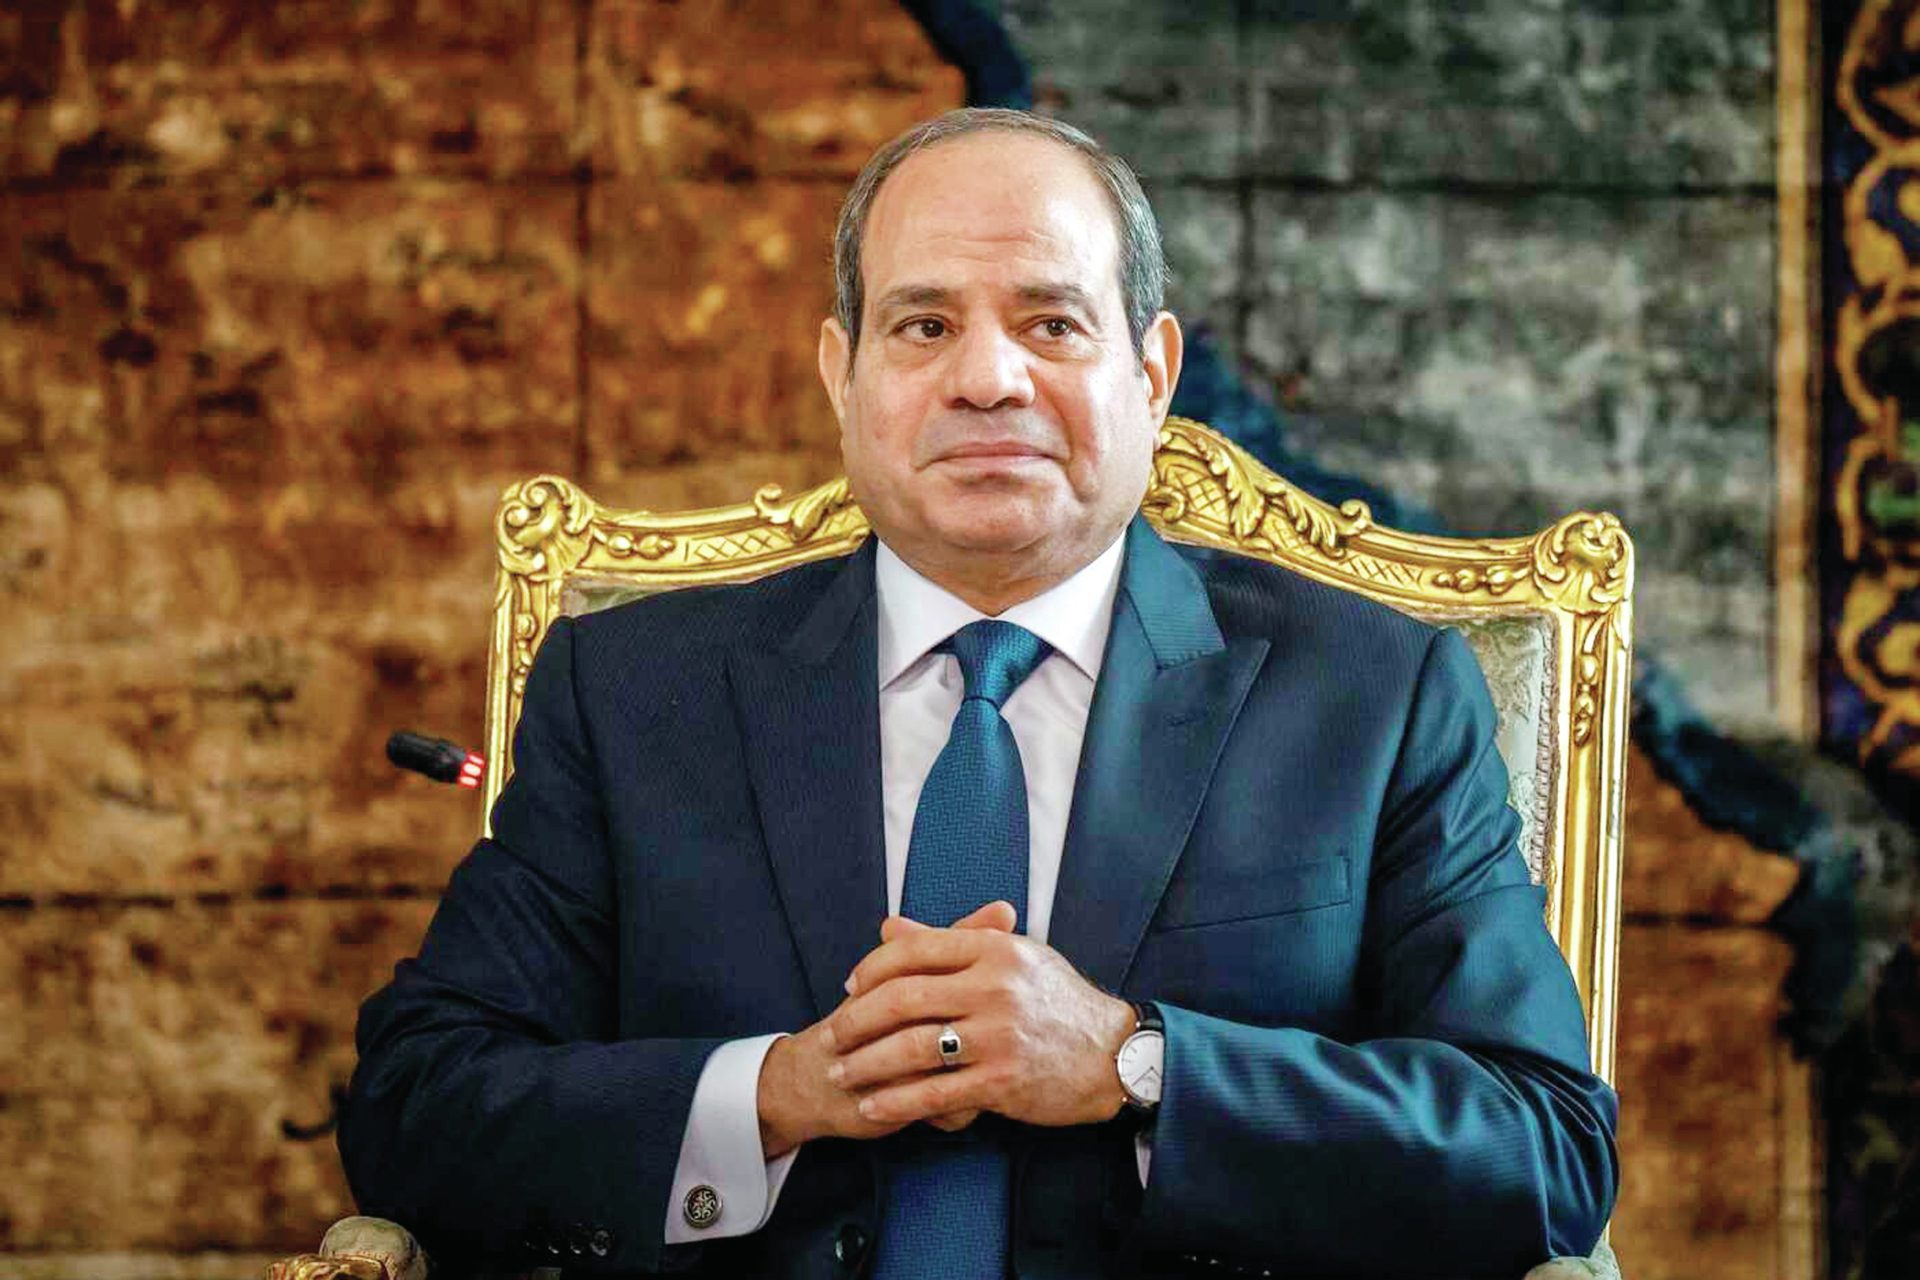 Eleições no Egito. Abdul Al-Sisi a caminho do terceiro mandato